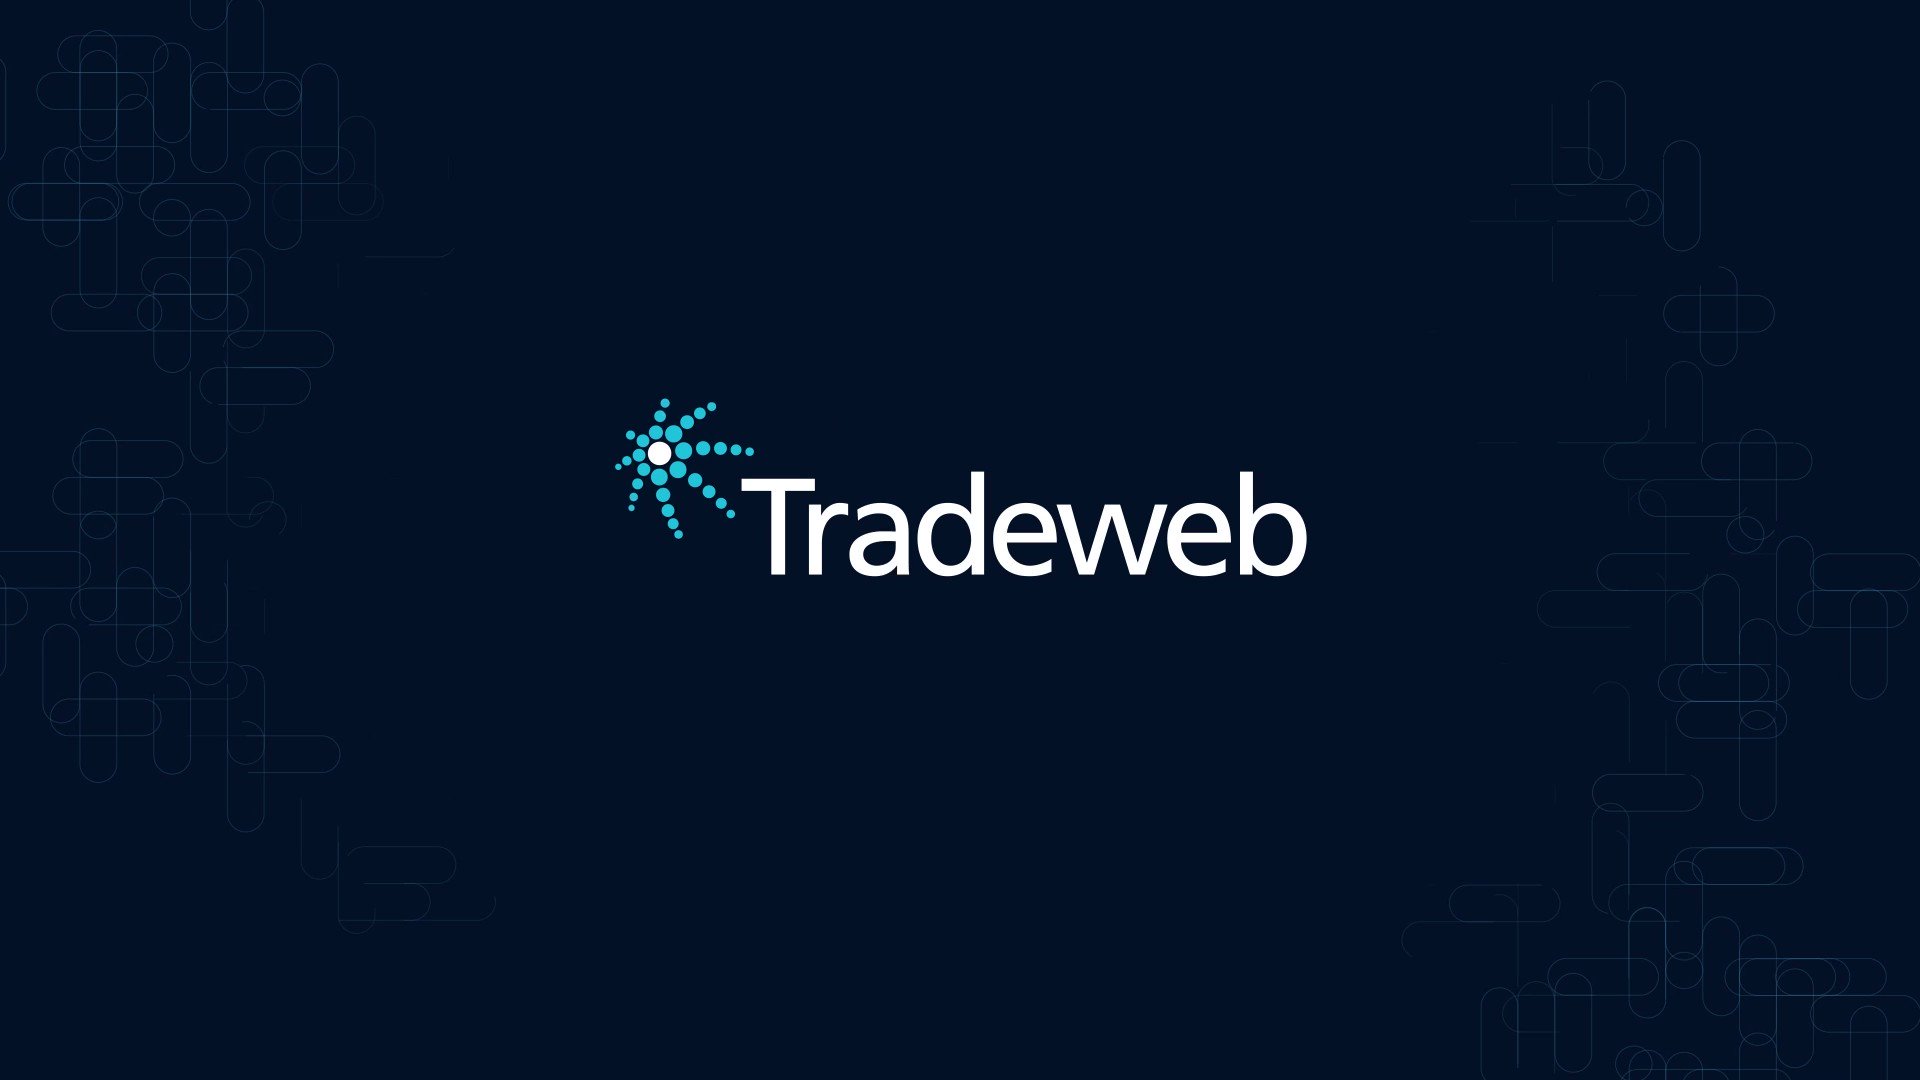 بلوغ متوسط أحجام التداول اليومية لشركة Tradeweb مستوى 1.57$ تريليون في سبتمبر هذا العام